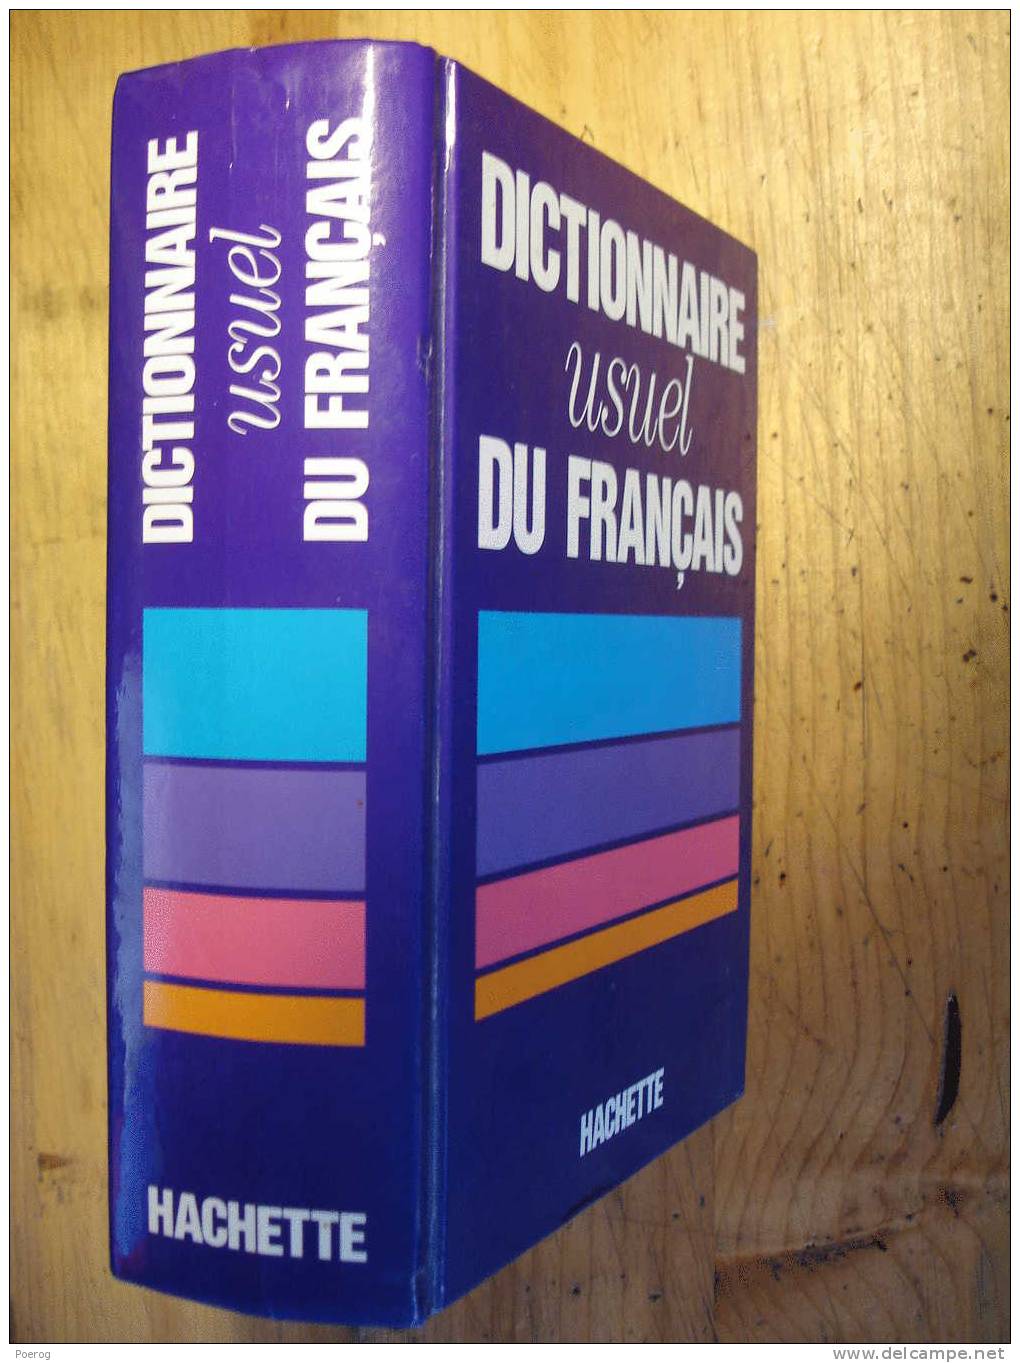 DICTIONNAIRE USUEL DU FRANCAIS - HACHETTE - 1989 - Dictionnaires